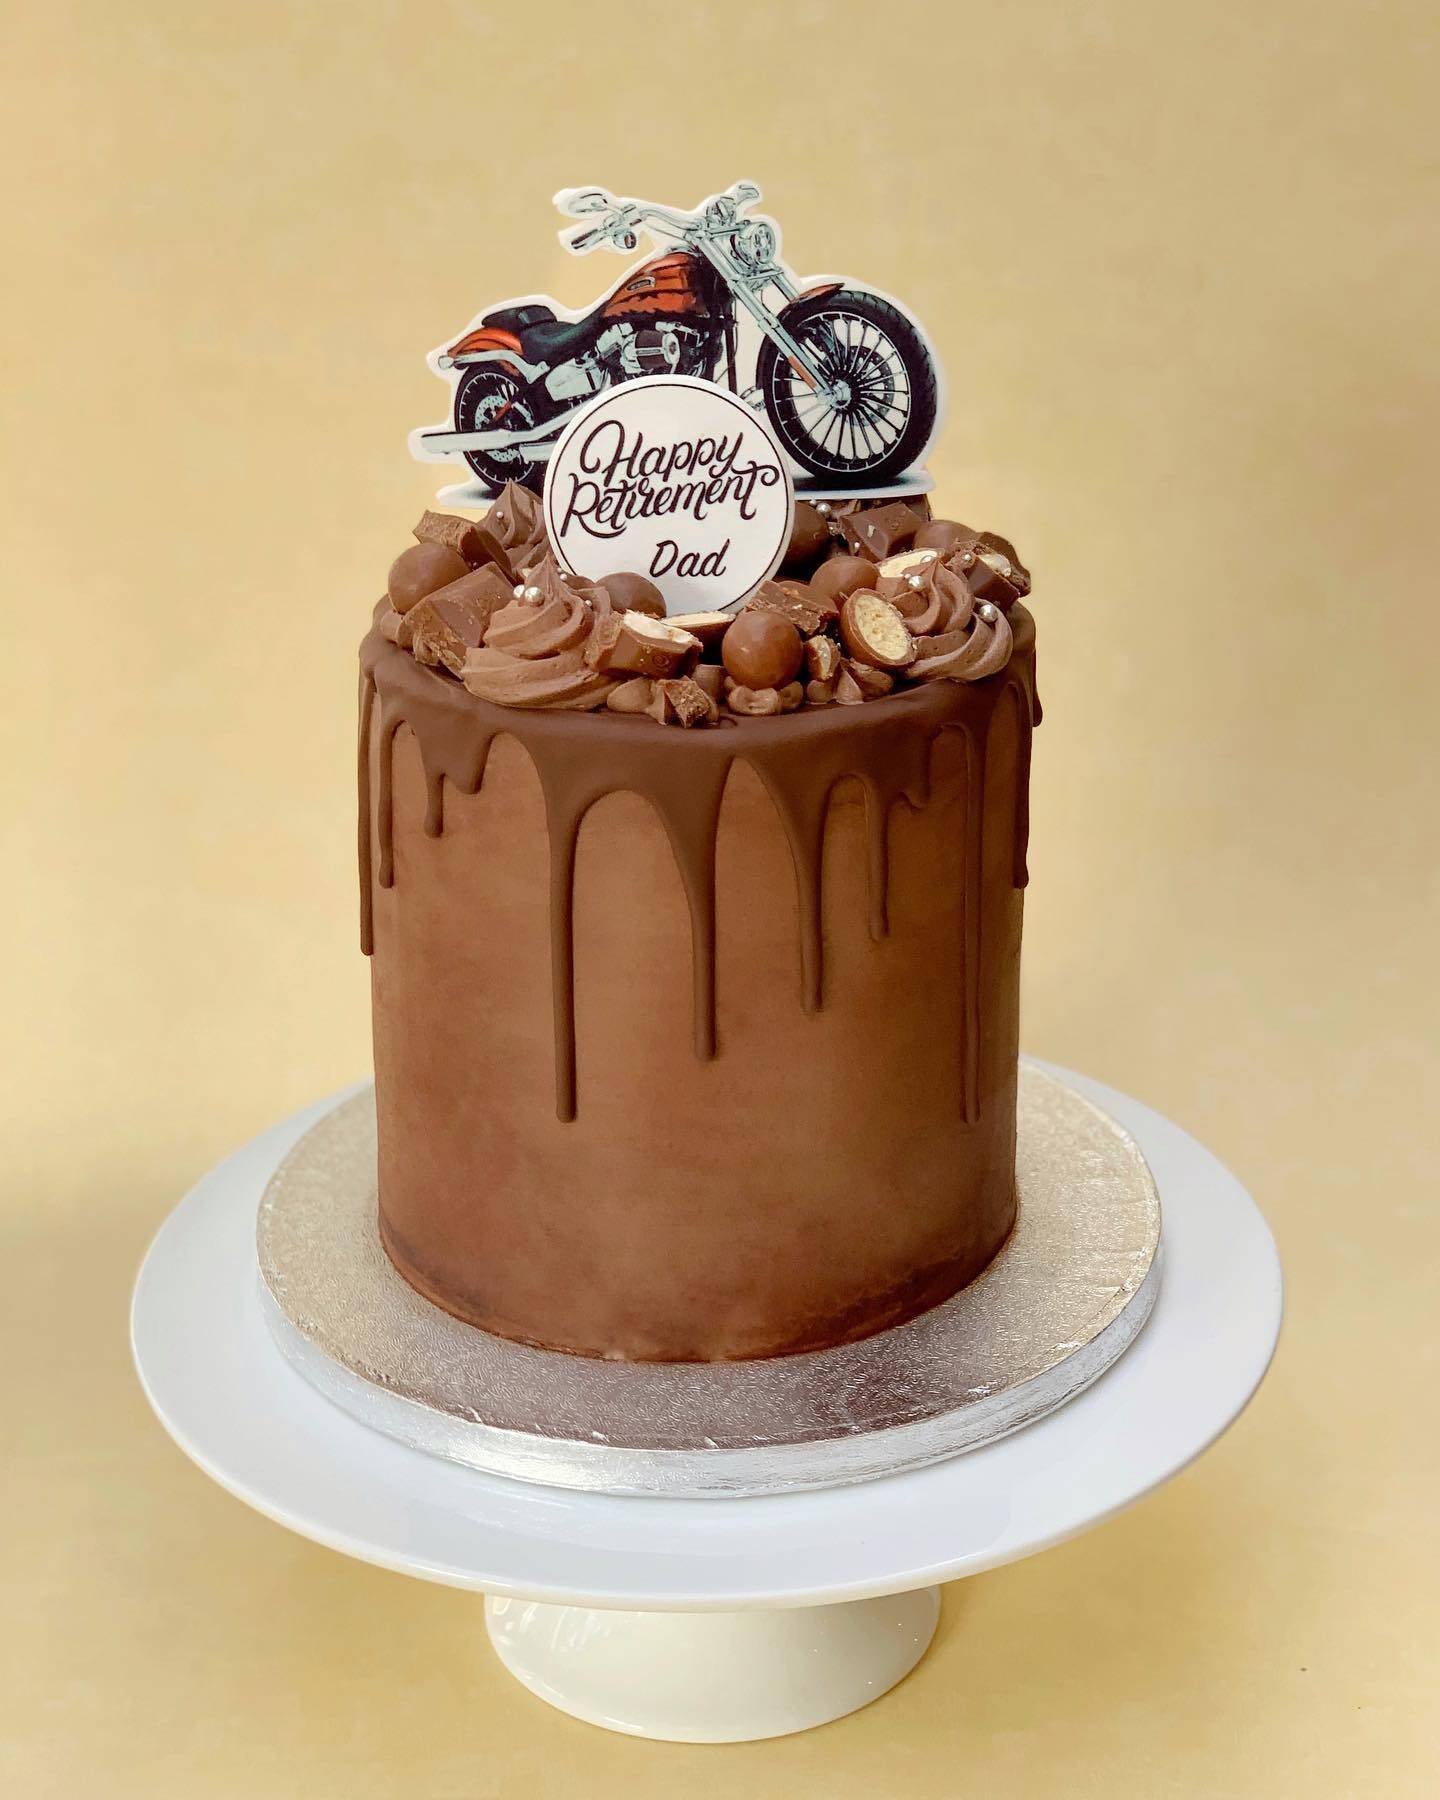 Chocolate Retirement Cake